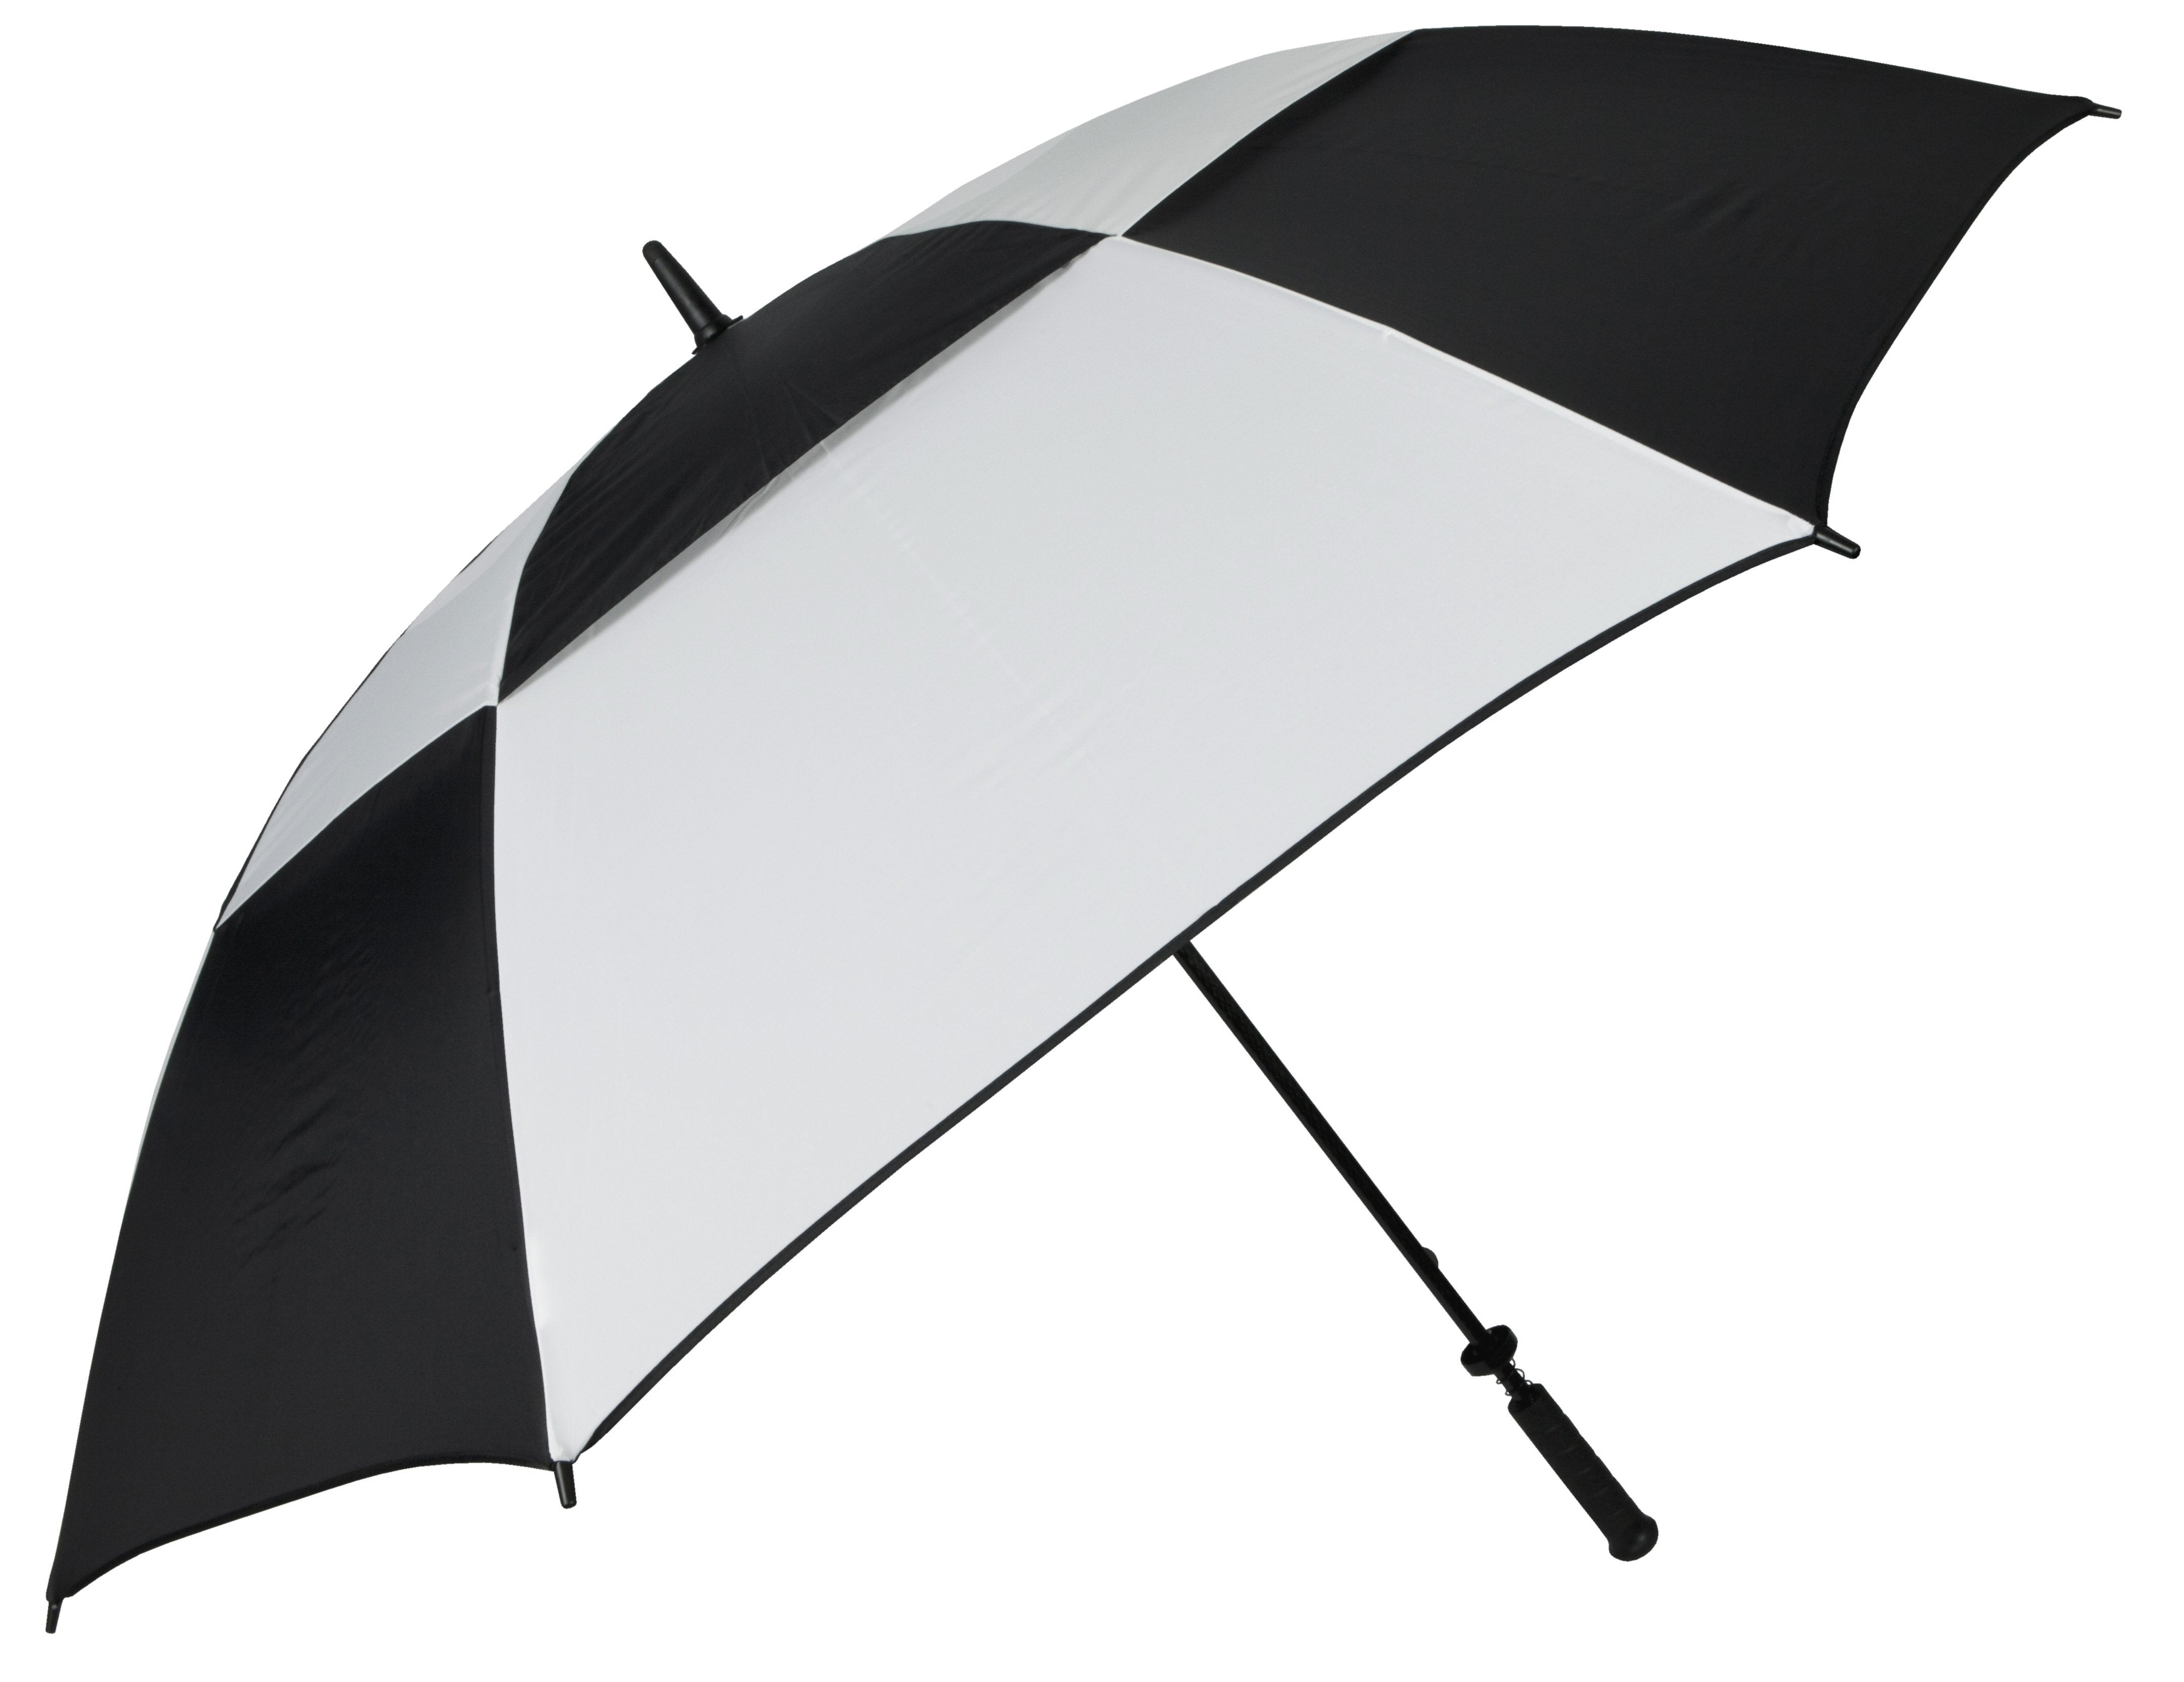 62" Guardian Umbrella